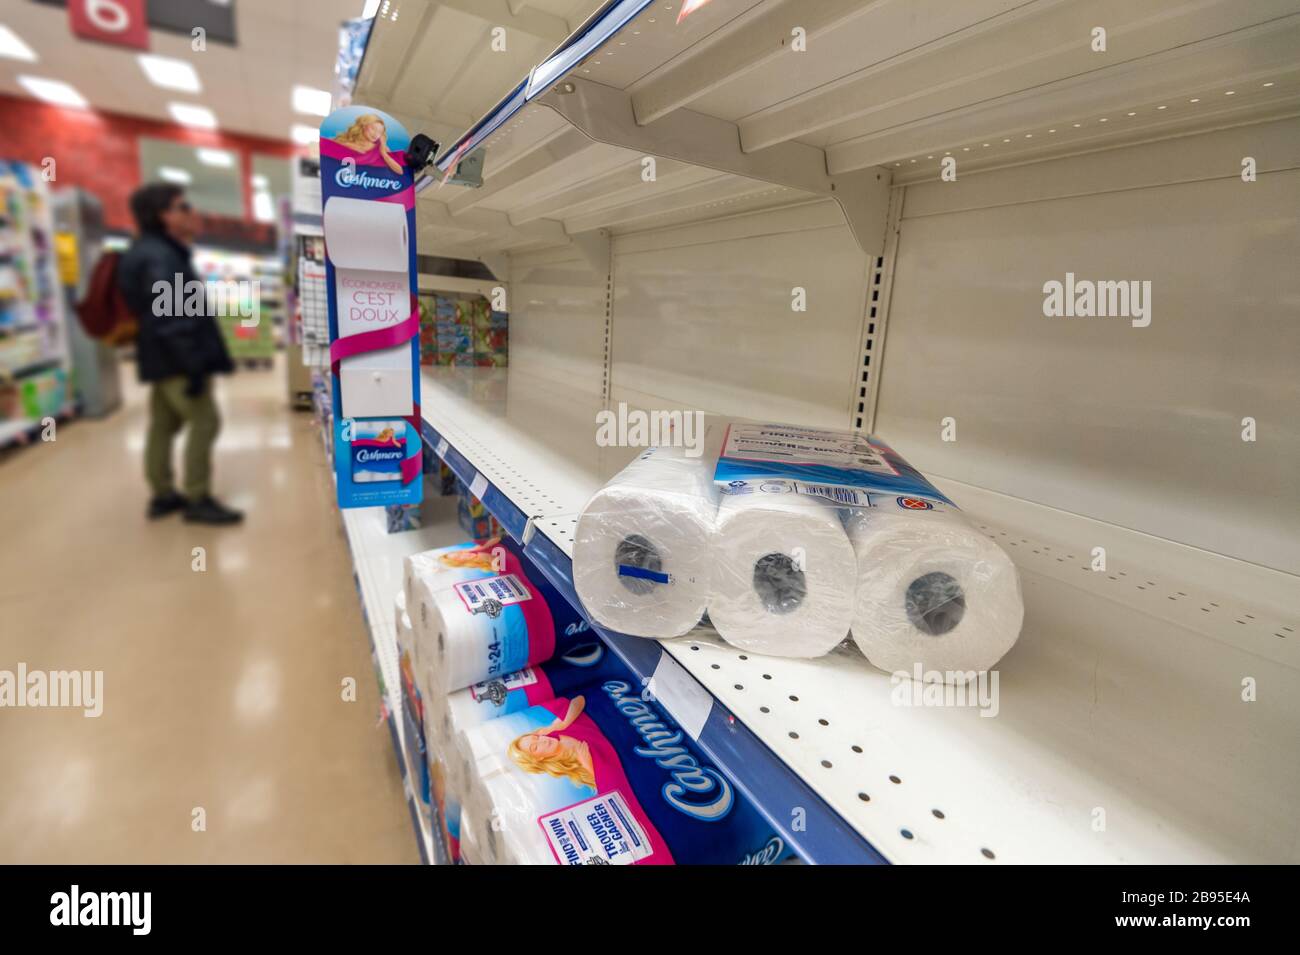 Montreal, CA - 20 marzo 2020: Scaffali vuoti di carta igienica in un supermercato. Mancanza di forniture a causa del panico di Coronavirus. Foto Stock